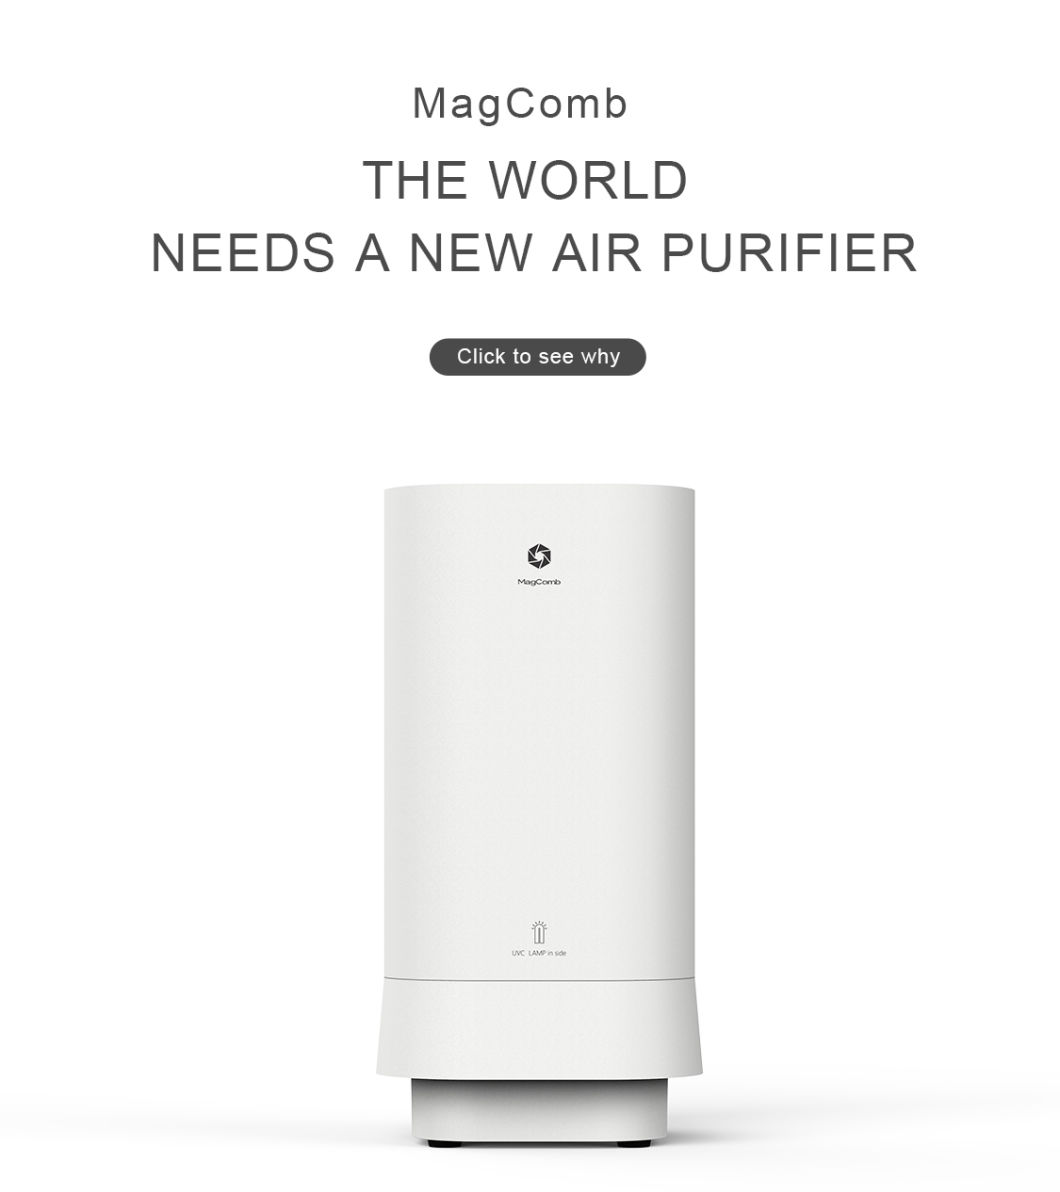 Air Purifier Reviews, Air Purifier Costco, Air Purifier Amazon, Air Purifier Best Buy, Air Purifier China